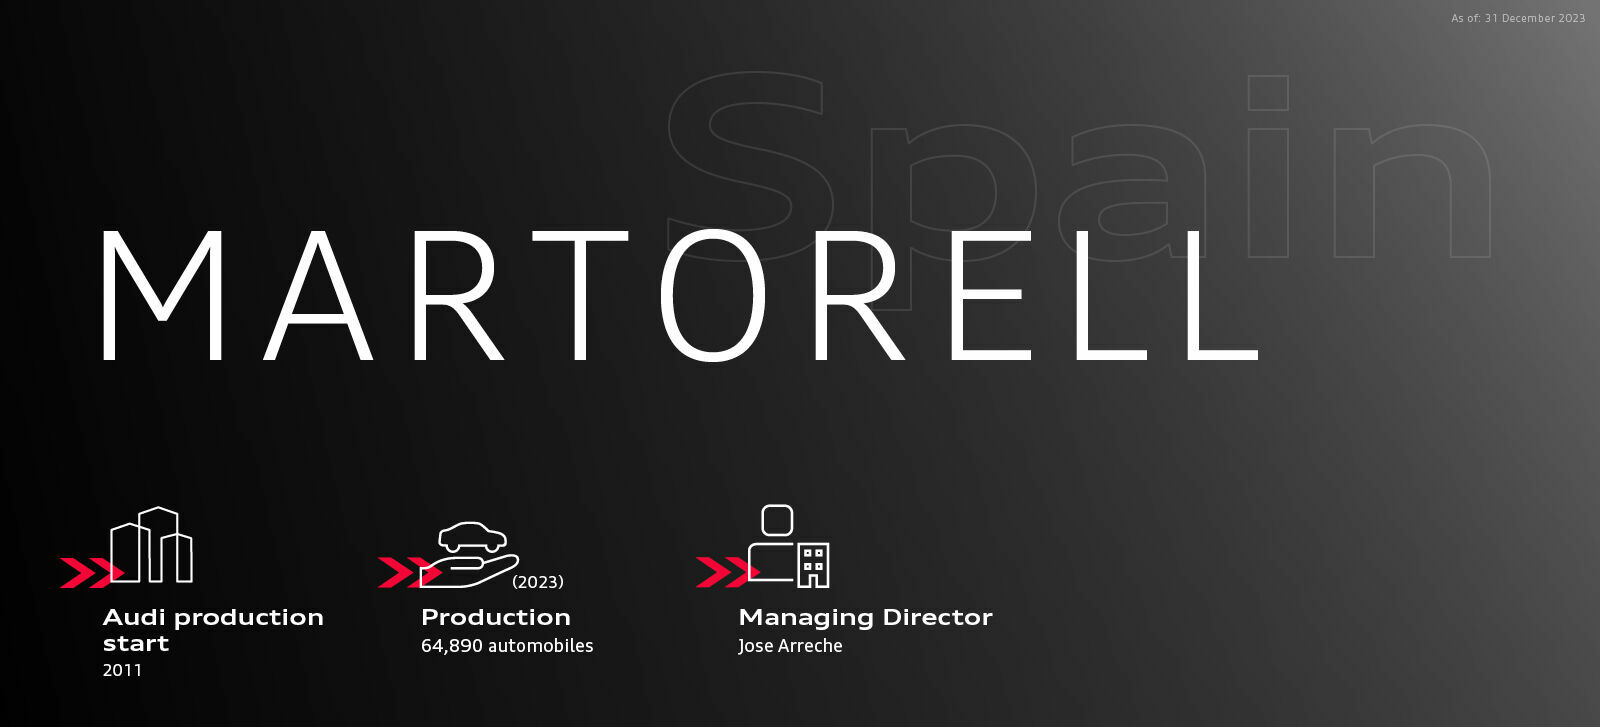 Audi in Spain (Martorell)